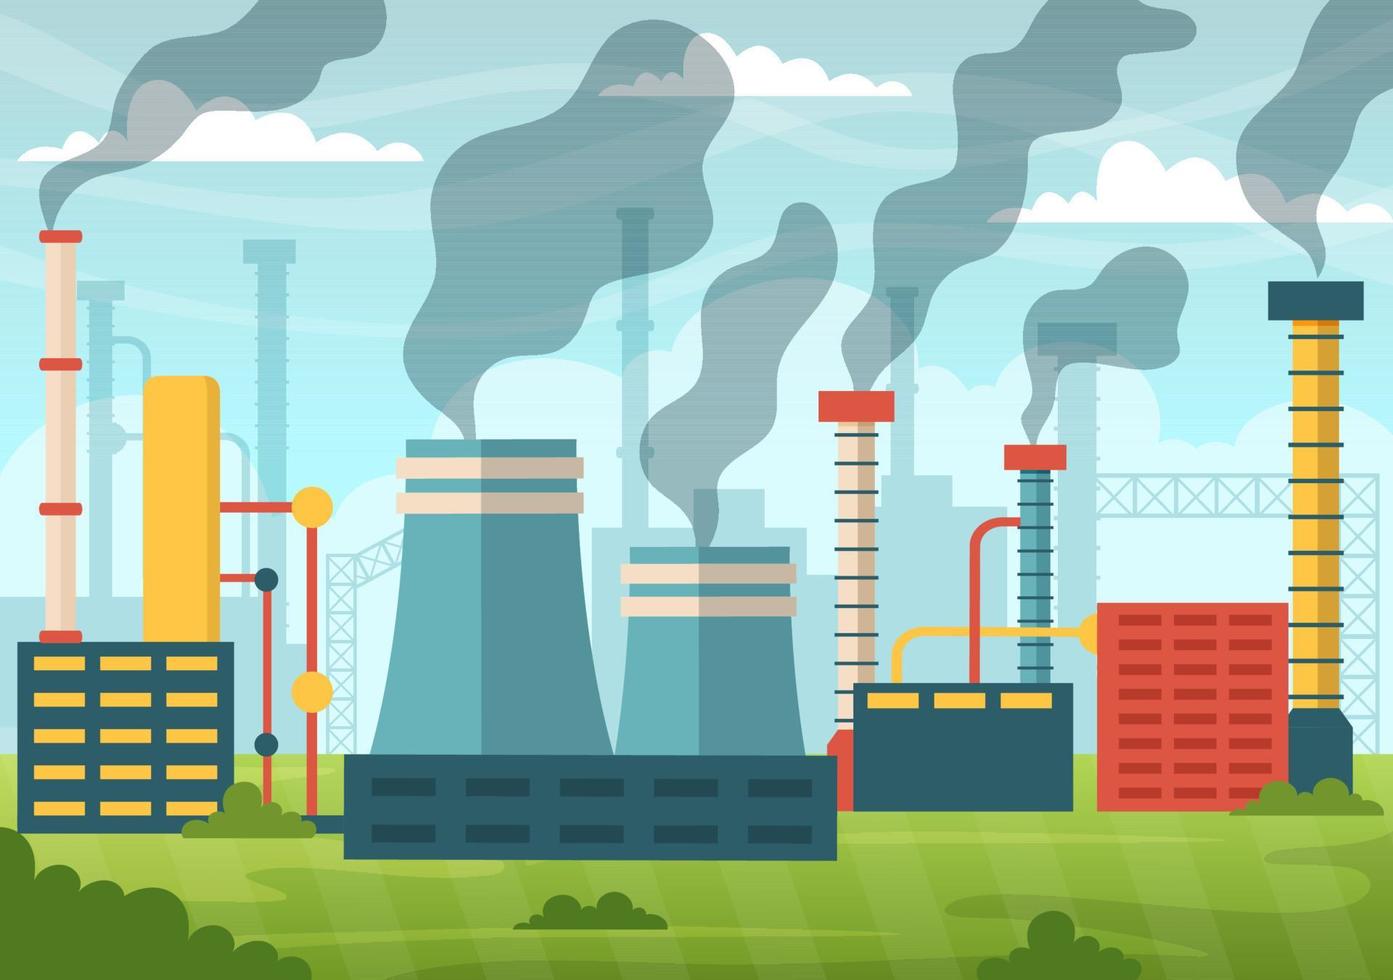 carbón dióxido o co2 ilustración a salvar planeta tierra desde clima cambio como un resultado de fábrica y vehículo contaminación en mano dibujado plantillas vector